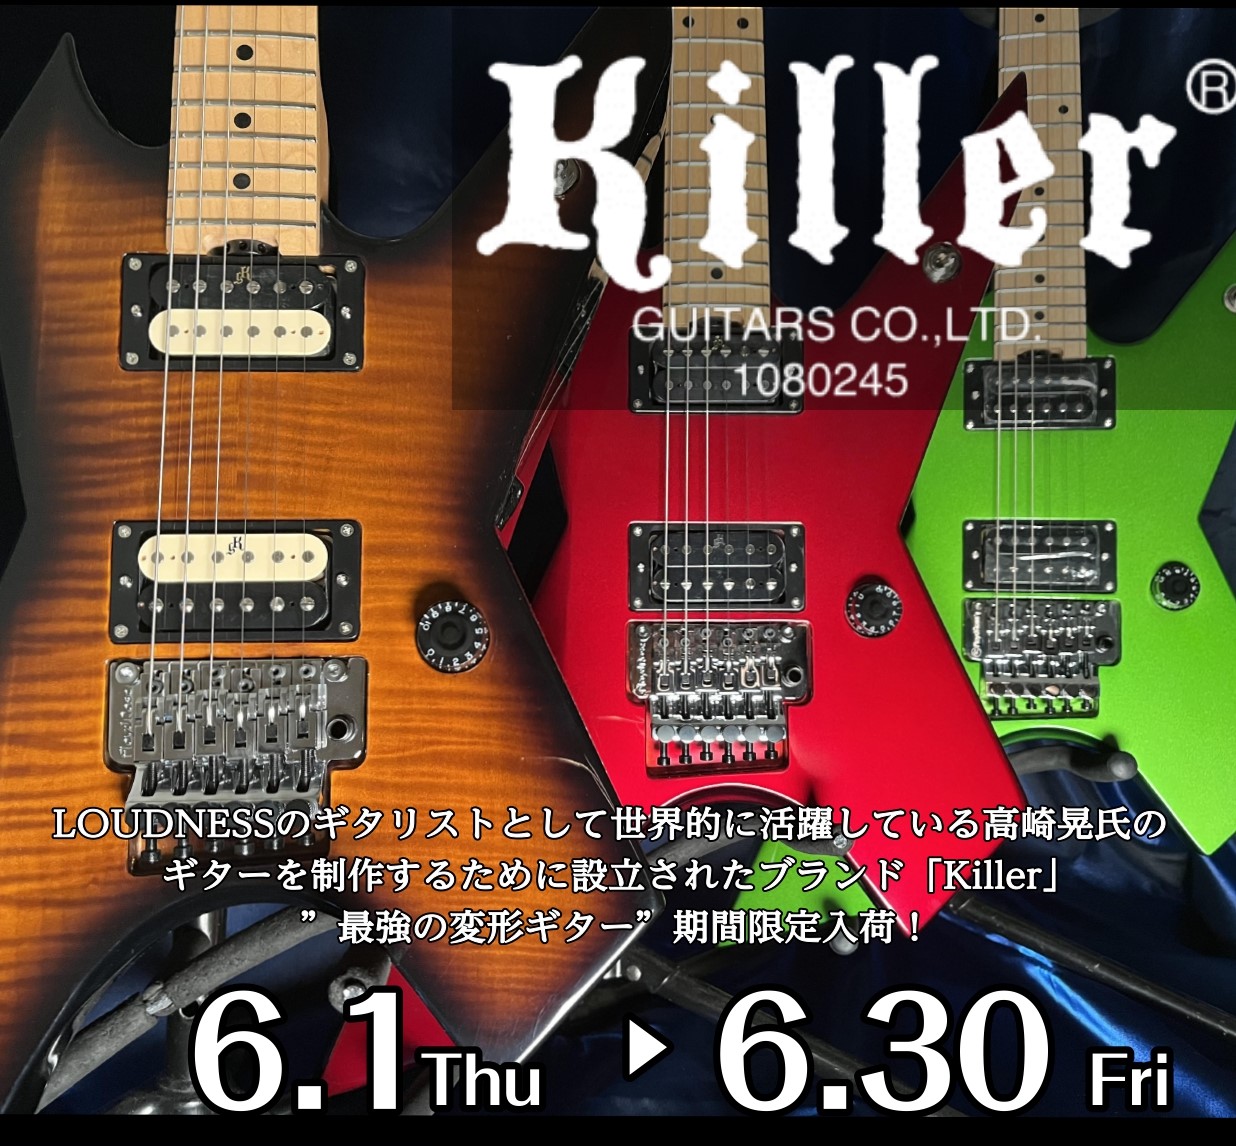 こんにちは！広島祇園店ギター担当の川西です！とにかく変形ギターが大好きです。今回はなんと…！広島祇園店でKillerフェアを開催致します！！久しぶりに店頭に奇抜でロックなギターが並んでおります。なぜKillerかは…私もまだまだ未熟者ですがこれまでたくさんギターを触ってきた中で個人的に一番のギターだ […]